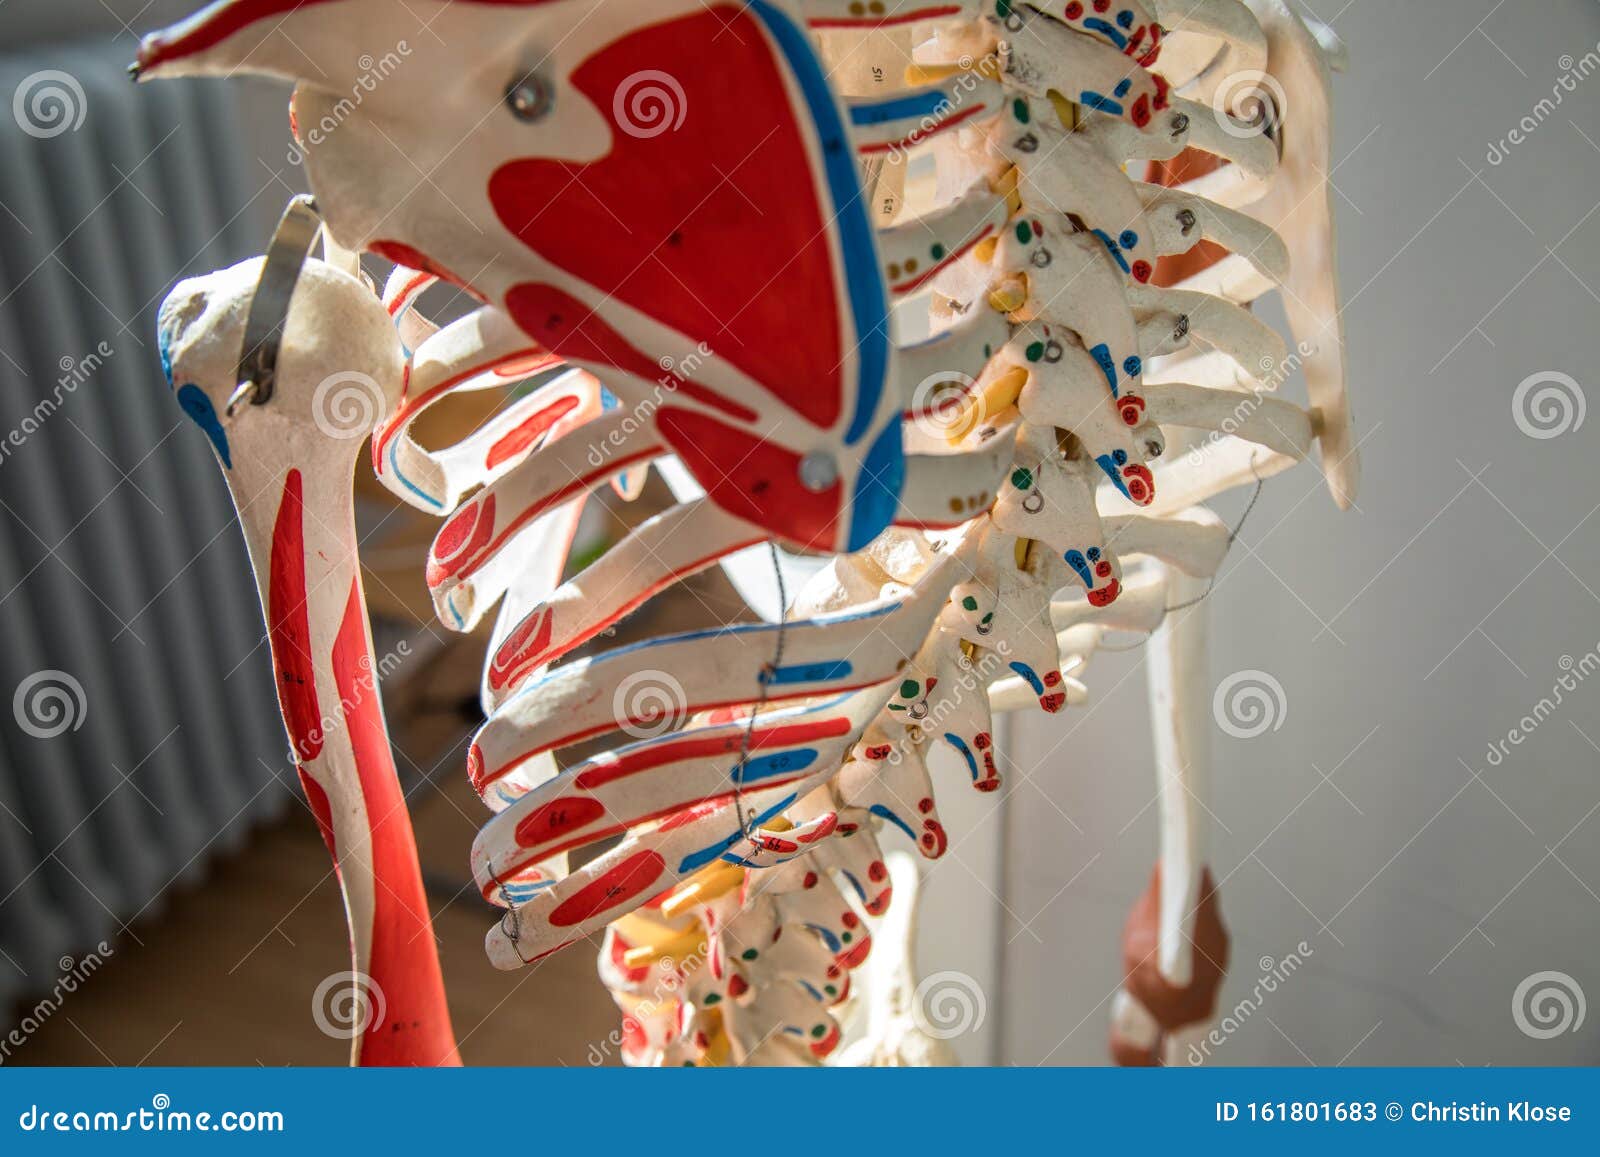 Thoracic Skeleton Anterior View Stock Photography | CartoonDealer.com ...